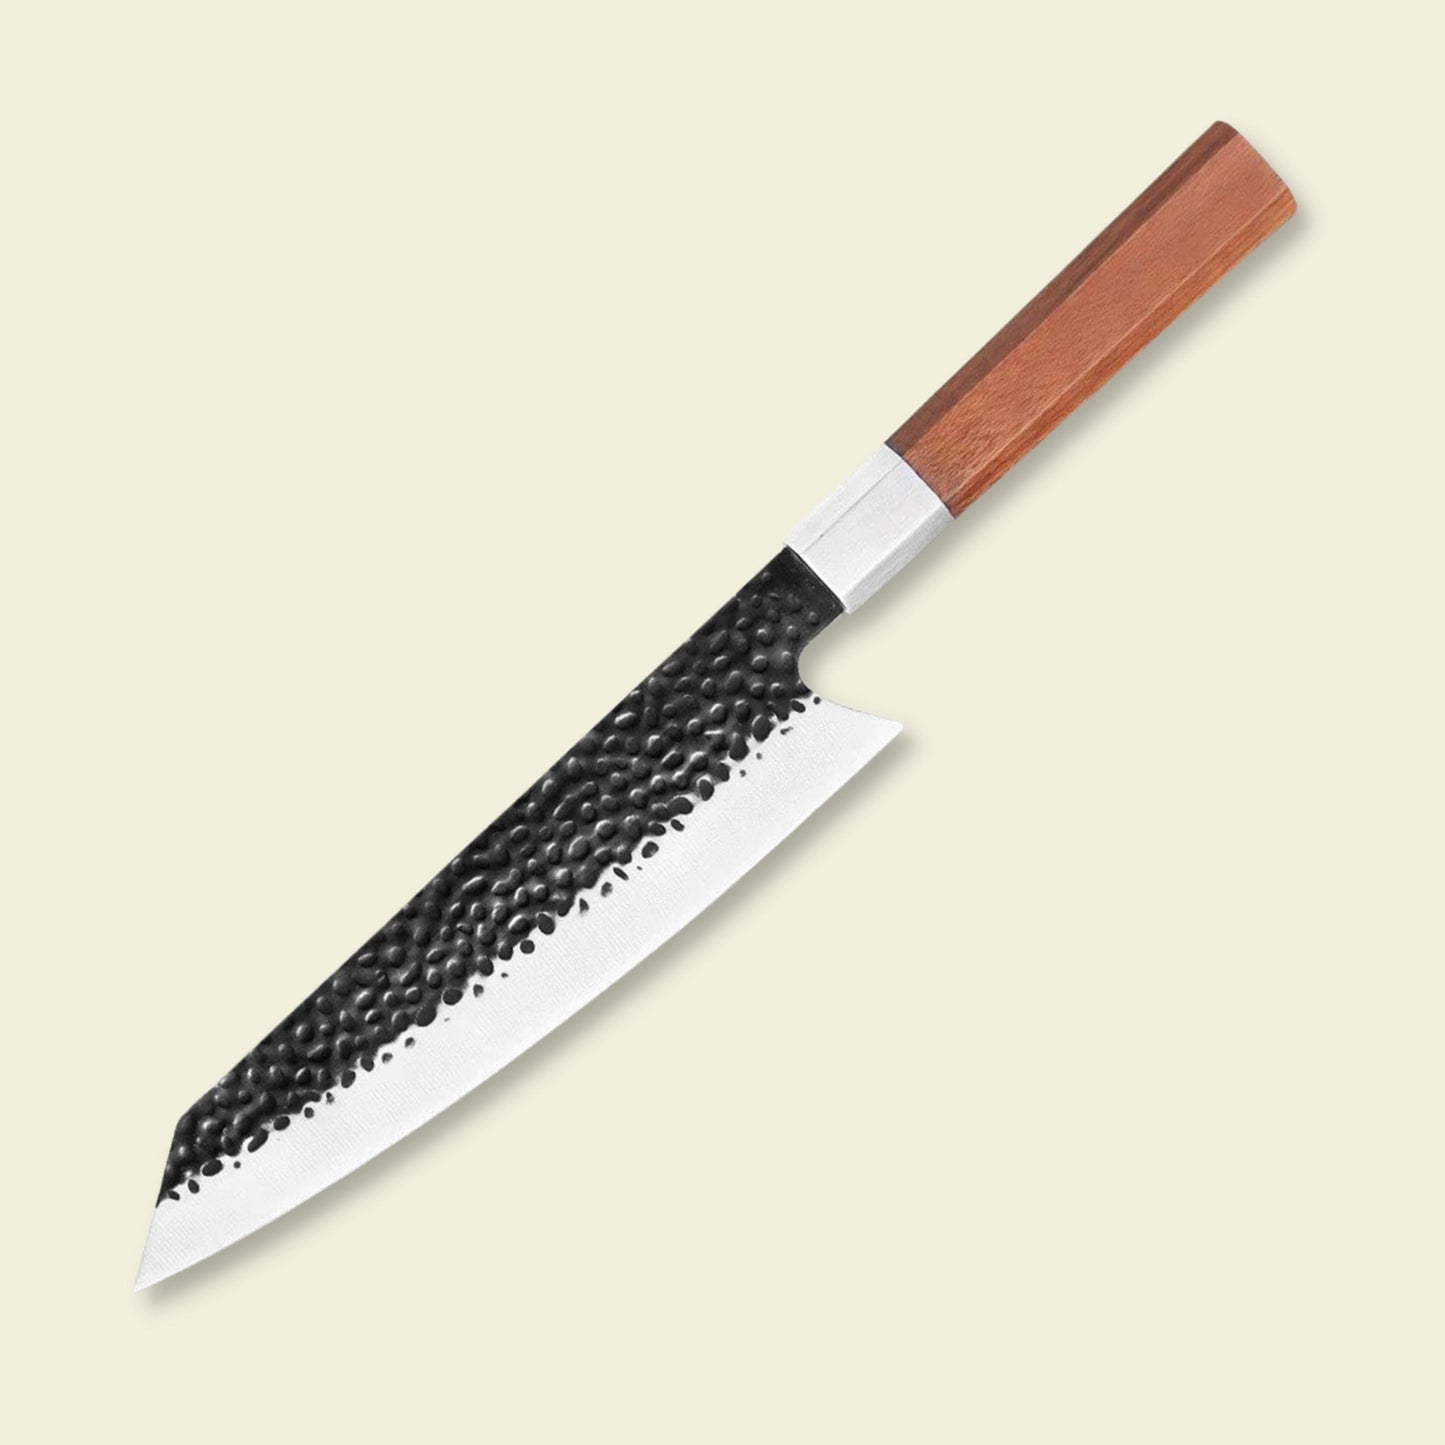 8-inch Japanese Kiritsuke Knife